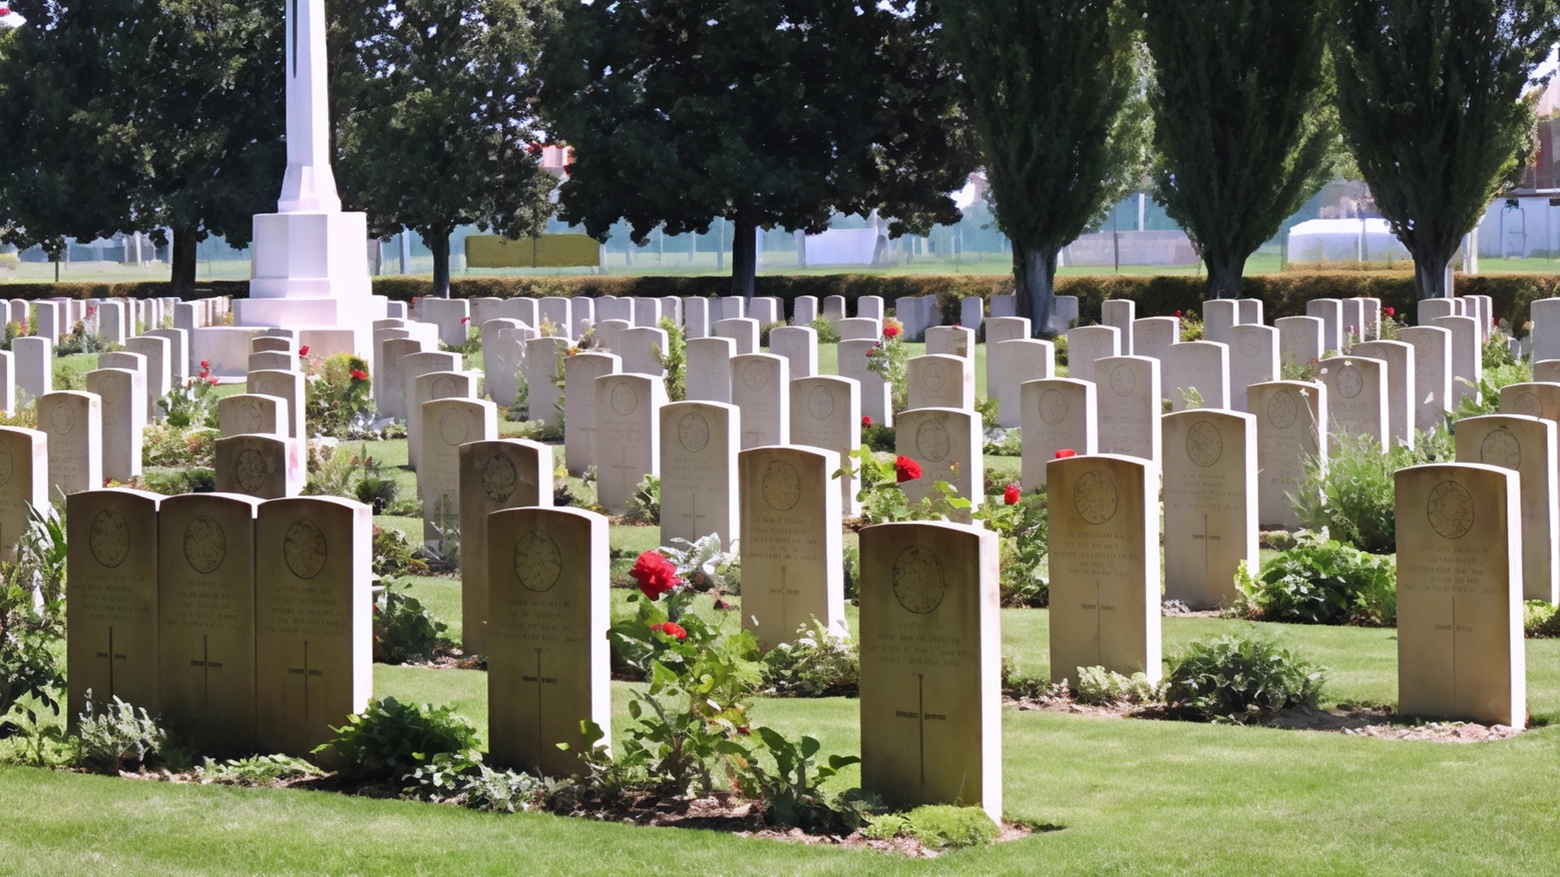 Liberazione e onore ai caduti. Oggi la visita al cimitero militare